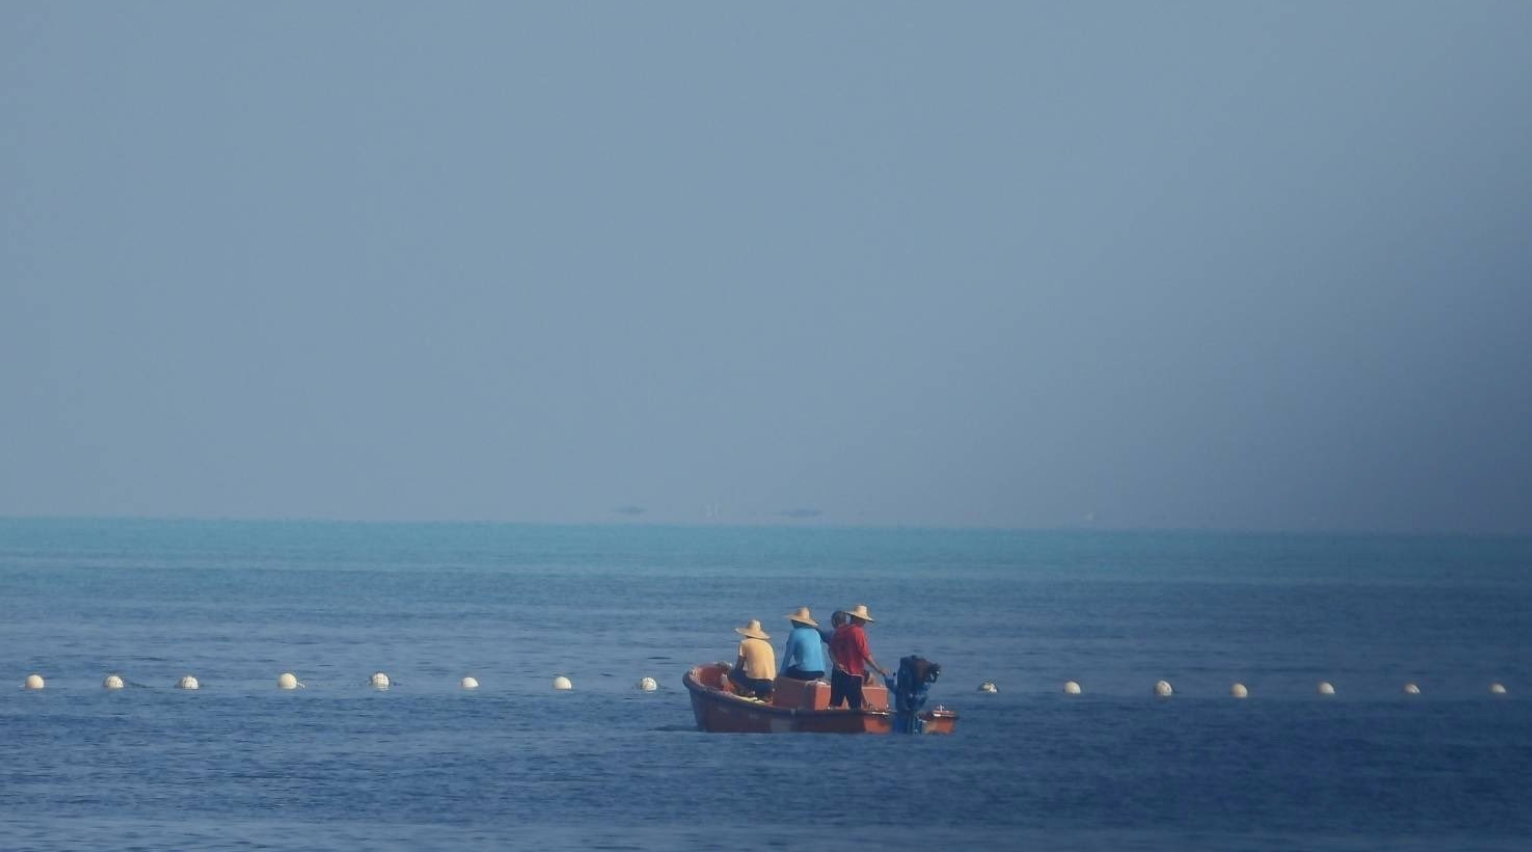 فیلیپین اقدام پکن در نصب مانع شناور در دریای چین جنوبی را محکوم کرد